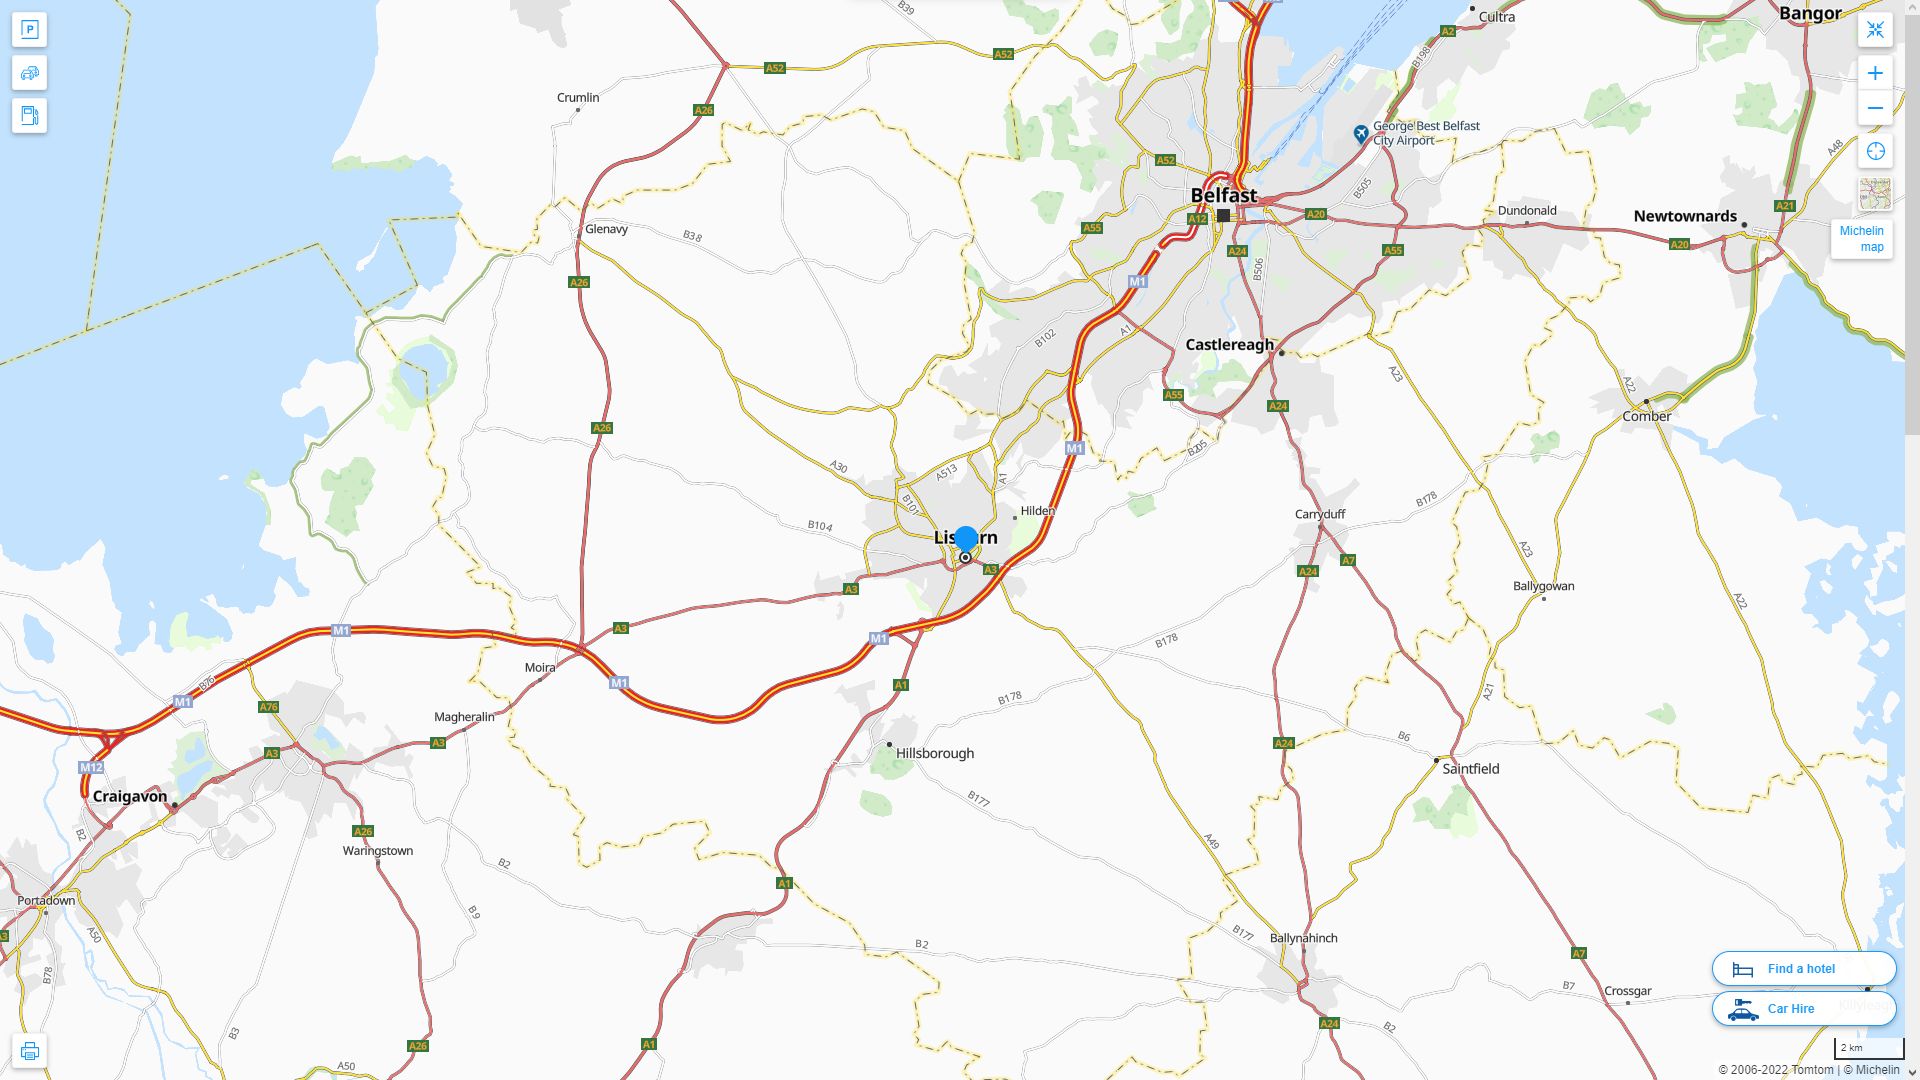 Lisburn Royaume Uni Autoroute et carte routiere